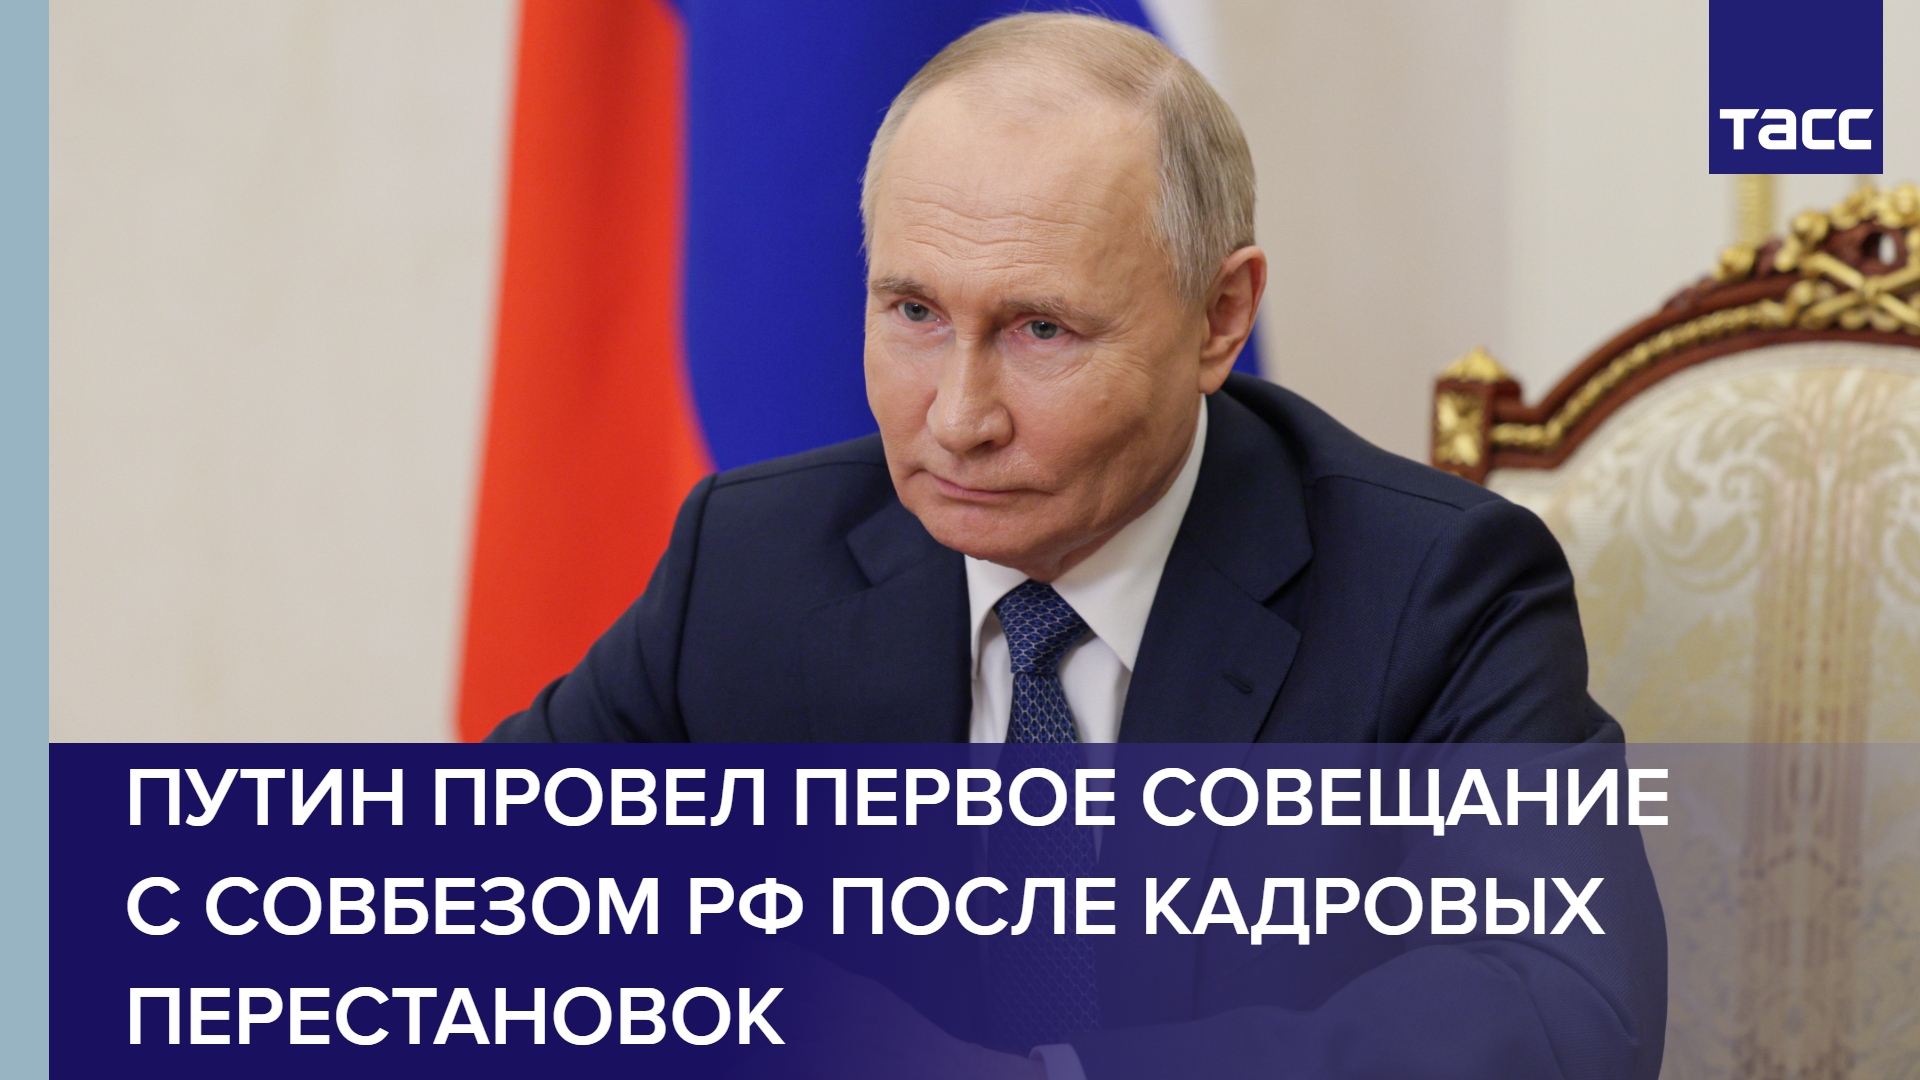 Путин провел первое совещание с Совбезом РФ после кадровых перестановок